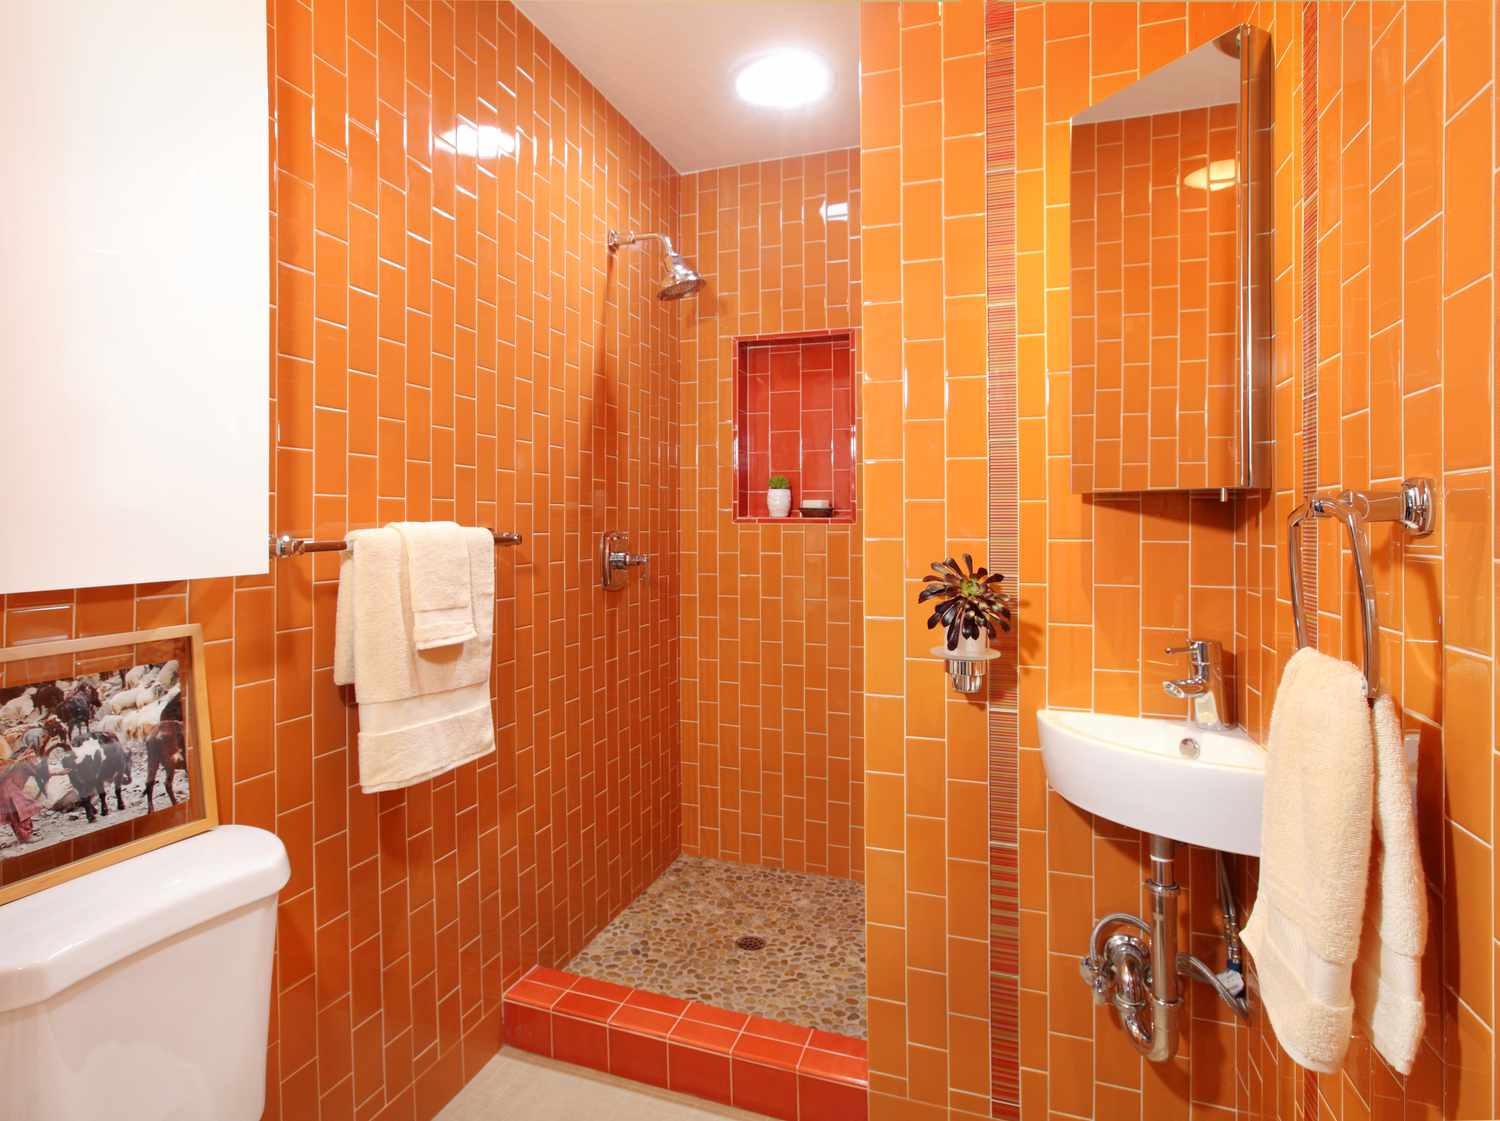 Salle de bain lumineuse et énergisante avec une palette de couleurs orange monochromatique.